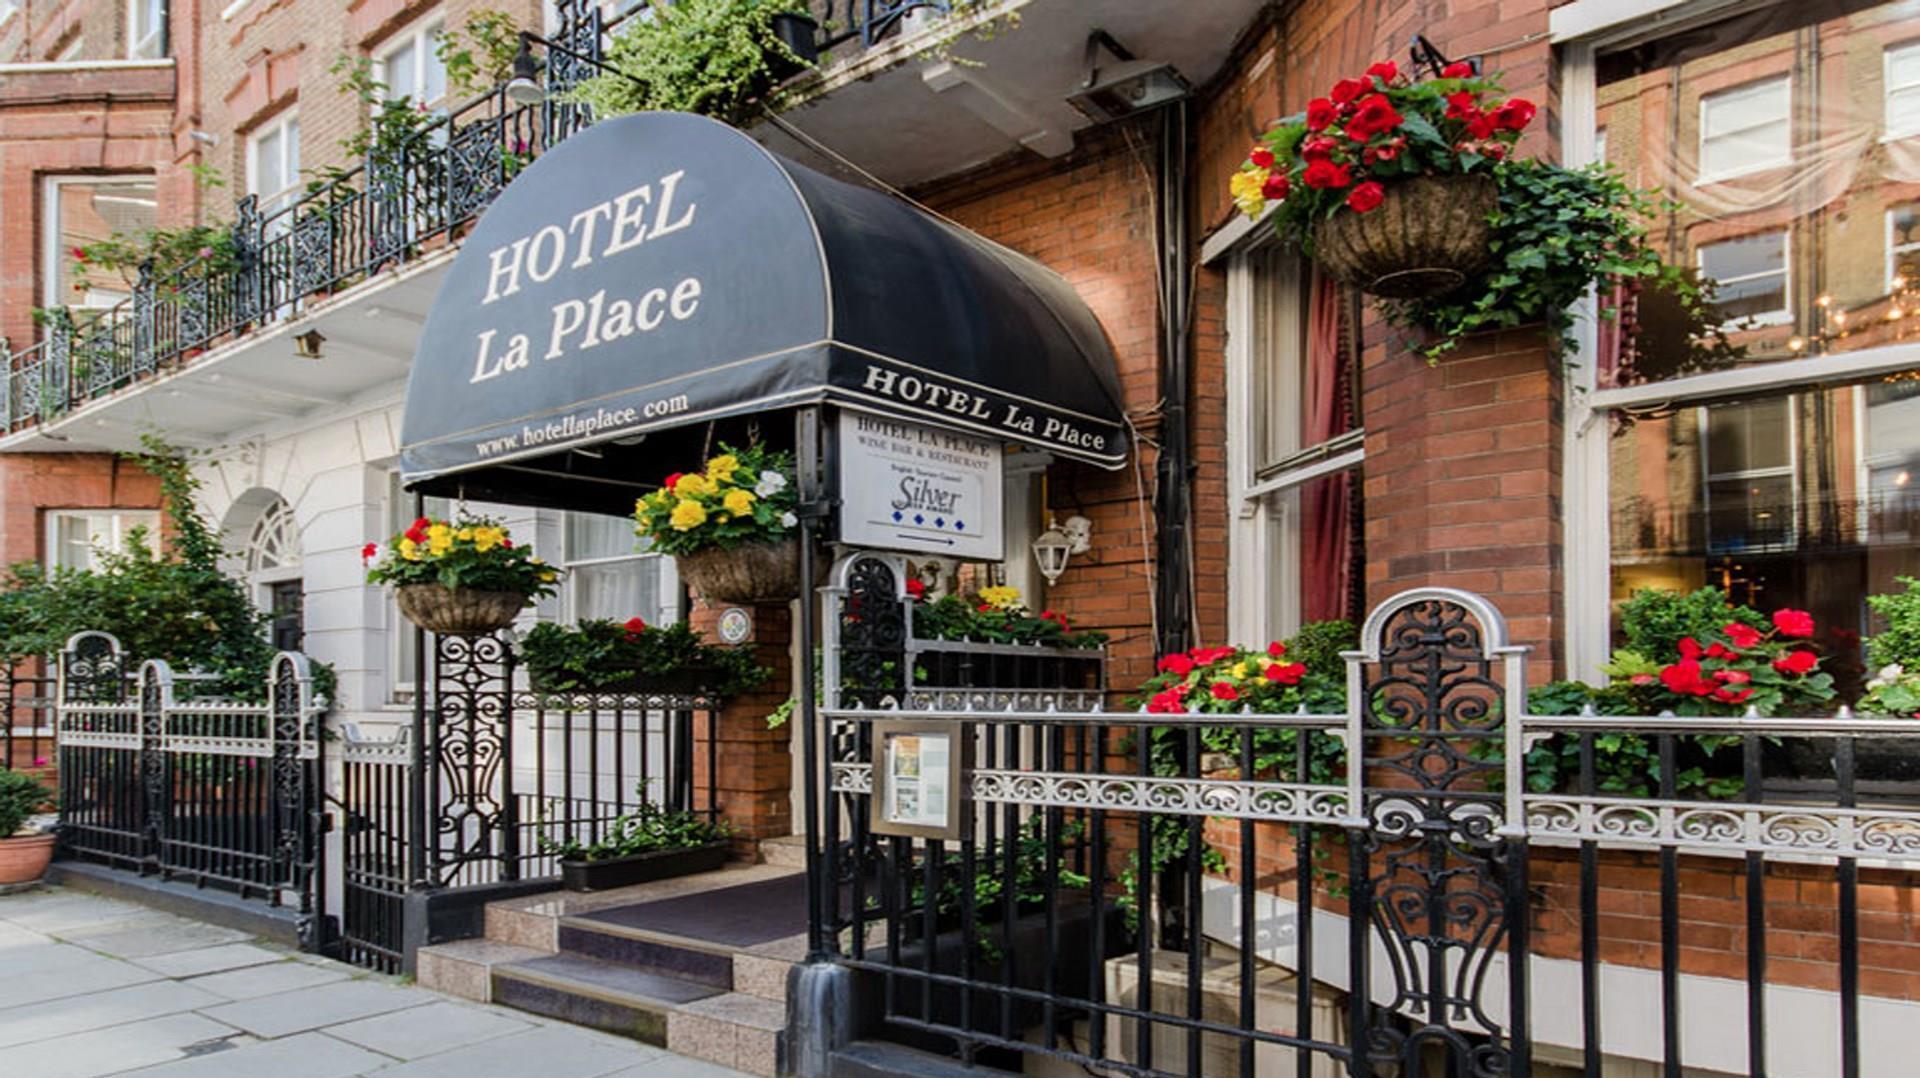 Hotel La Place in London, GB1